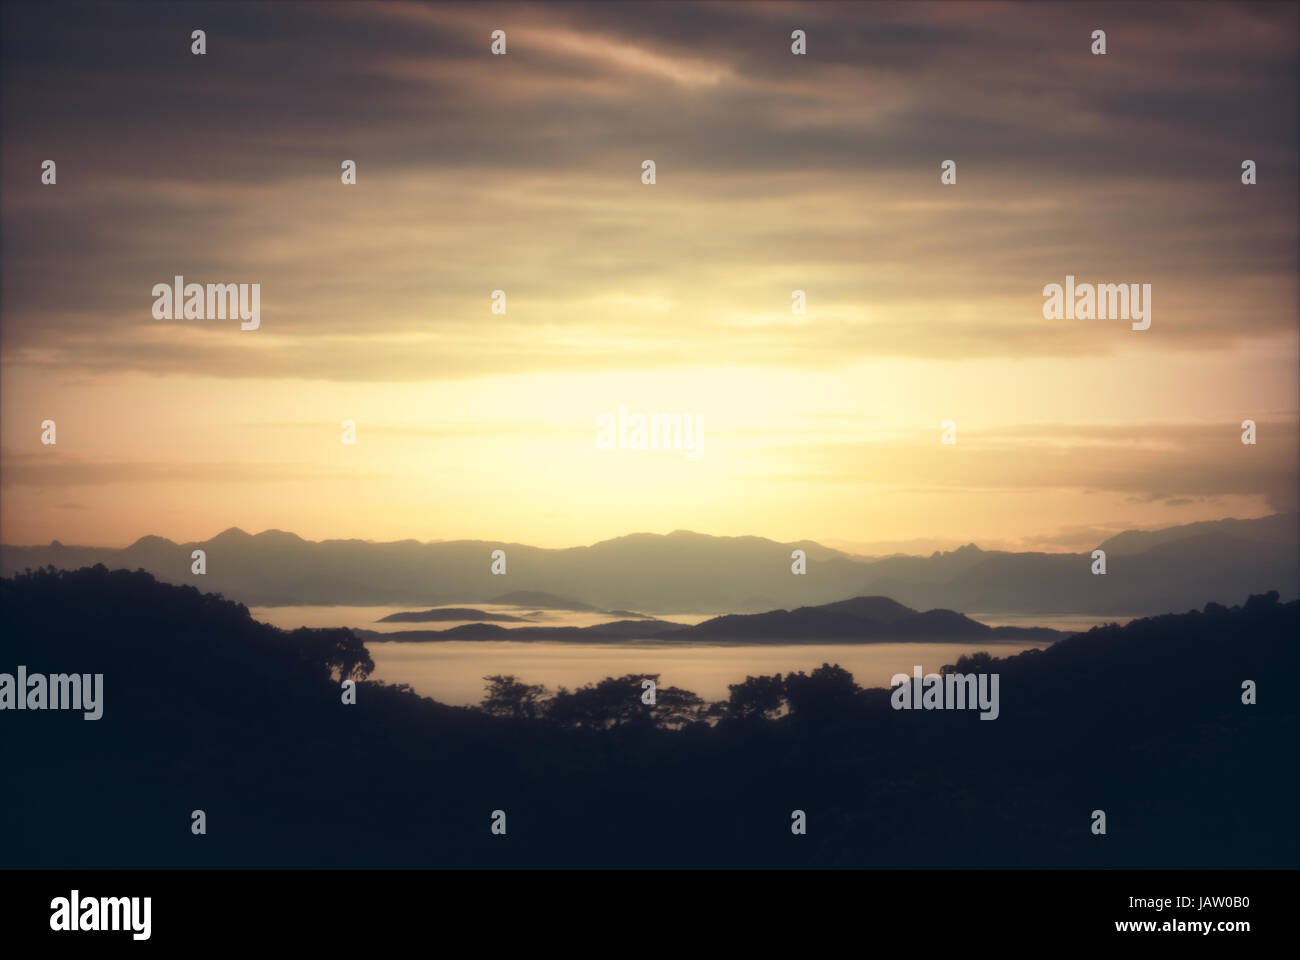 Landschaft mit Sonnenaufgang. Bild als Hintergrund verwendet. Stockfoto